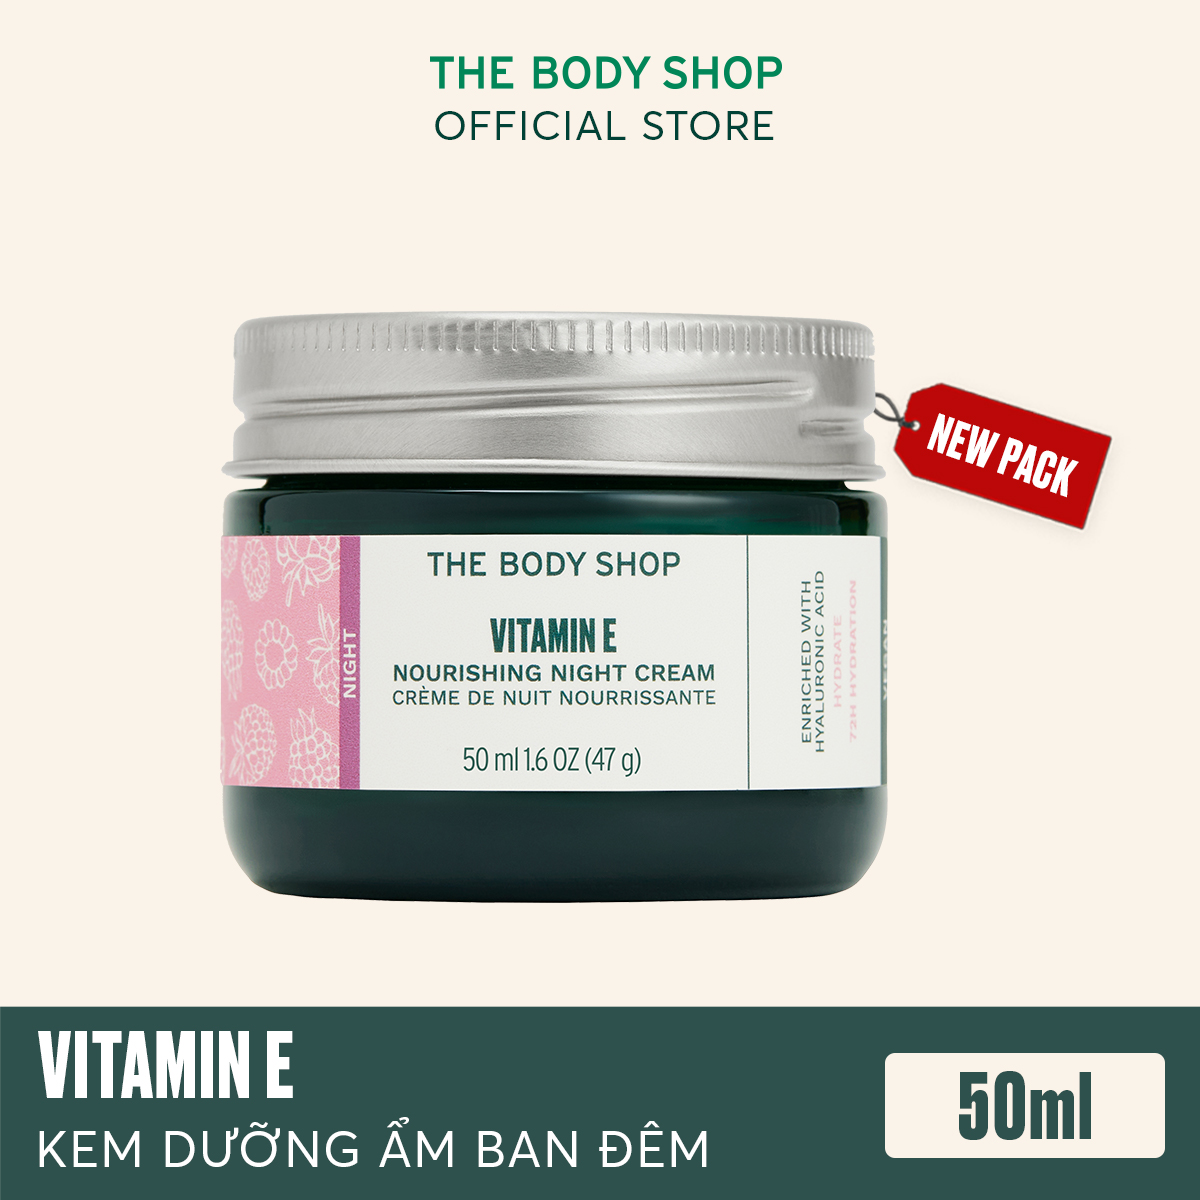 Kem dưỡng ẩm ban đêm The Body Shop Vitamin E Nourishing Night Cream 50ML